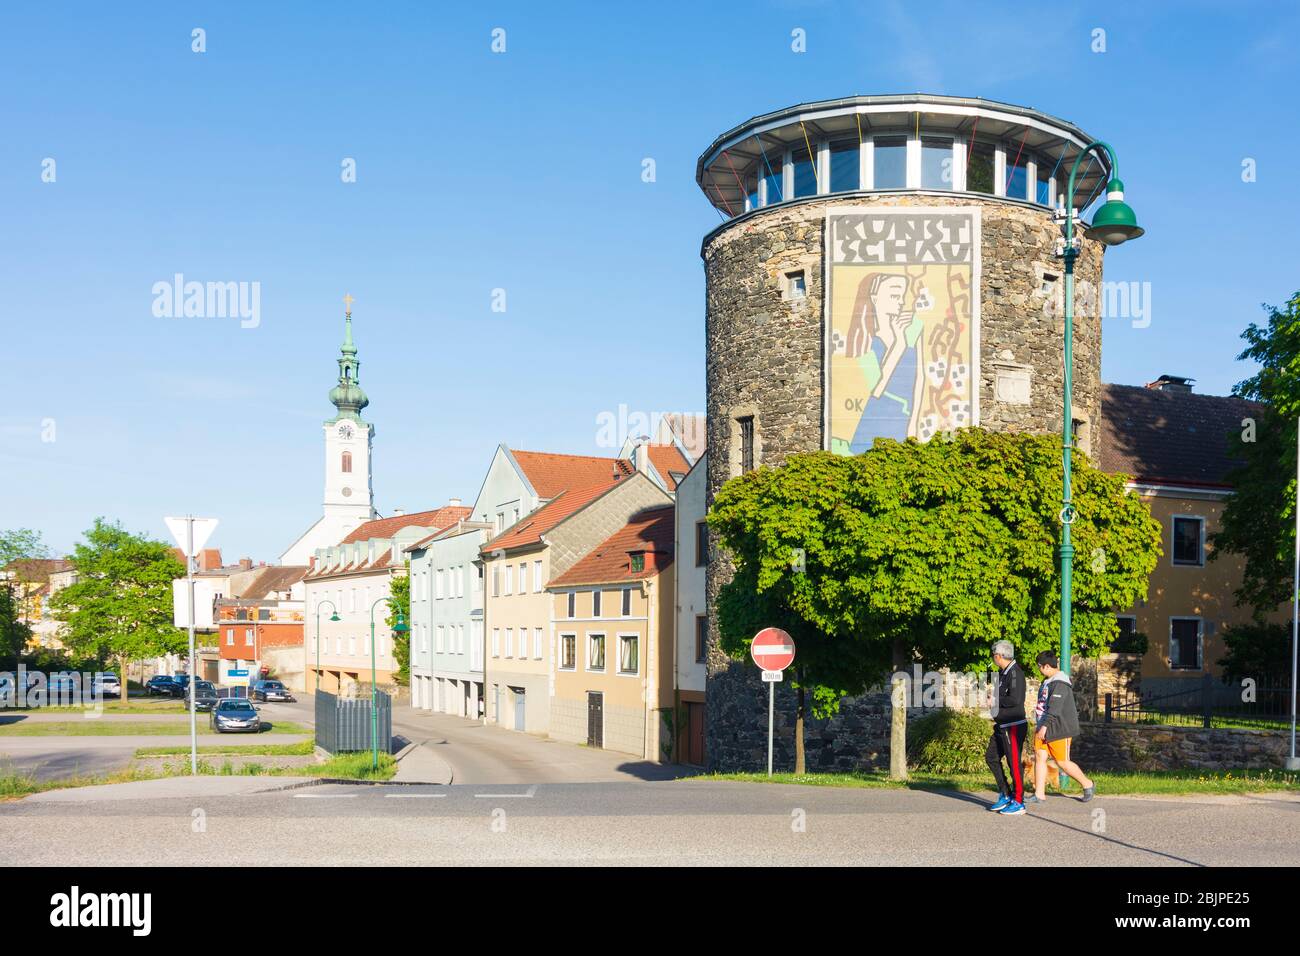 Pöchlarn: tower Welserturm, church, in Mostviertel, Niederösterreich, Lower Austria, Austria Stock Photo